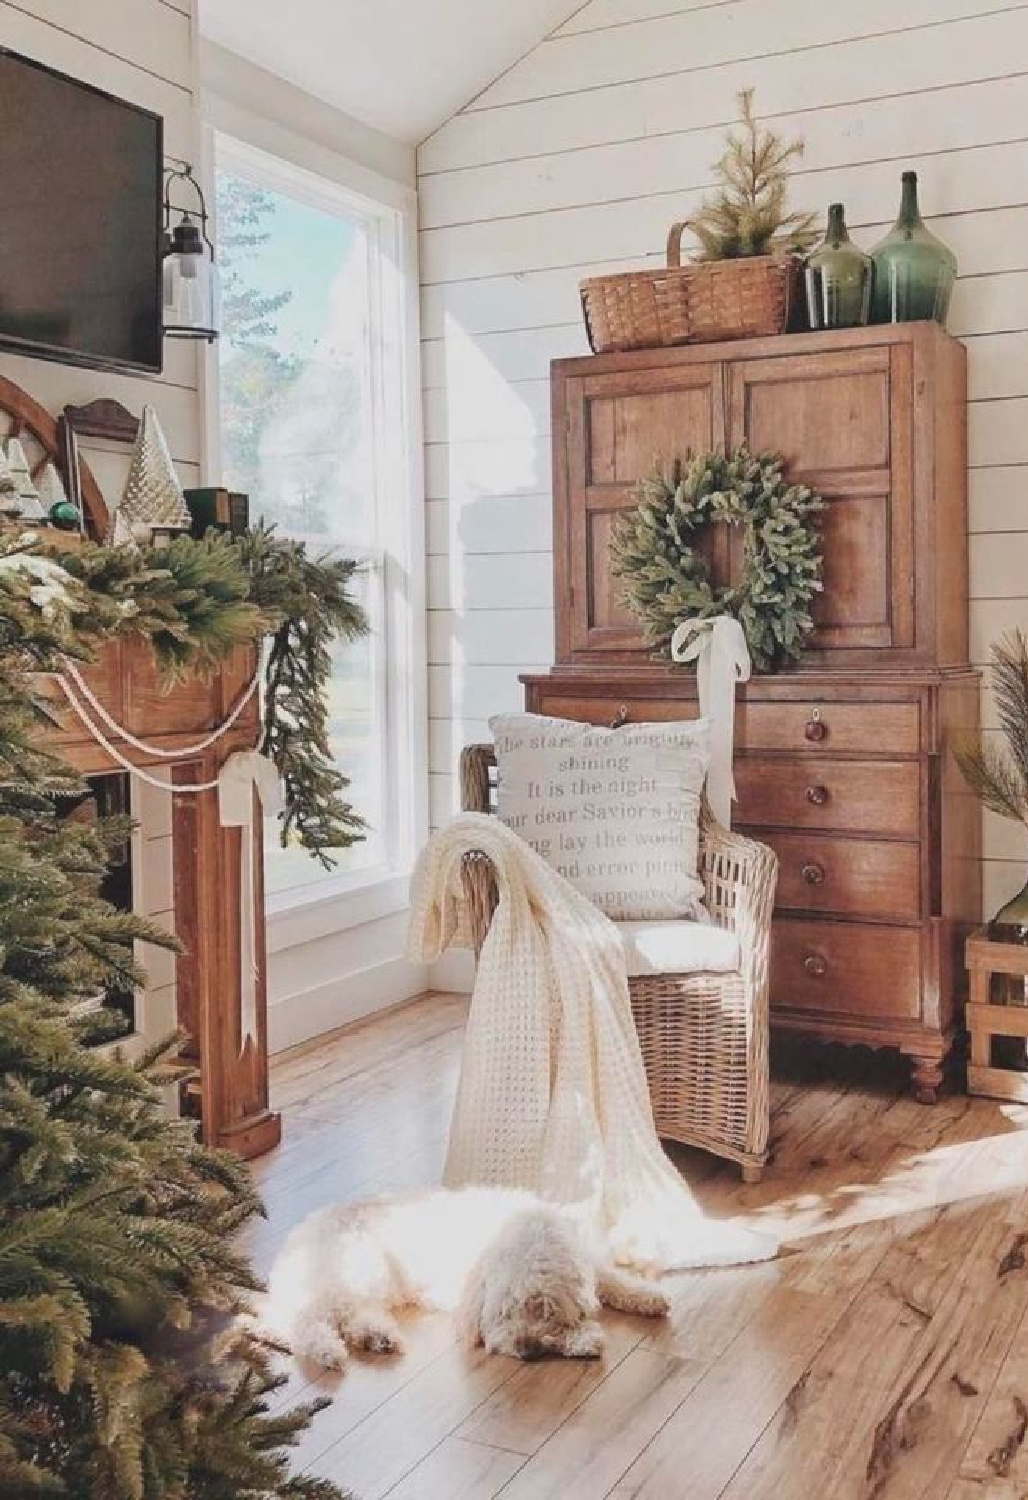 Farmhouse Christmas inspo - AI Design via Whitney Hess (Just Decorate!). #aidesign #aiinteriordesign #aiarchitecture #farmhousechristmas